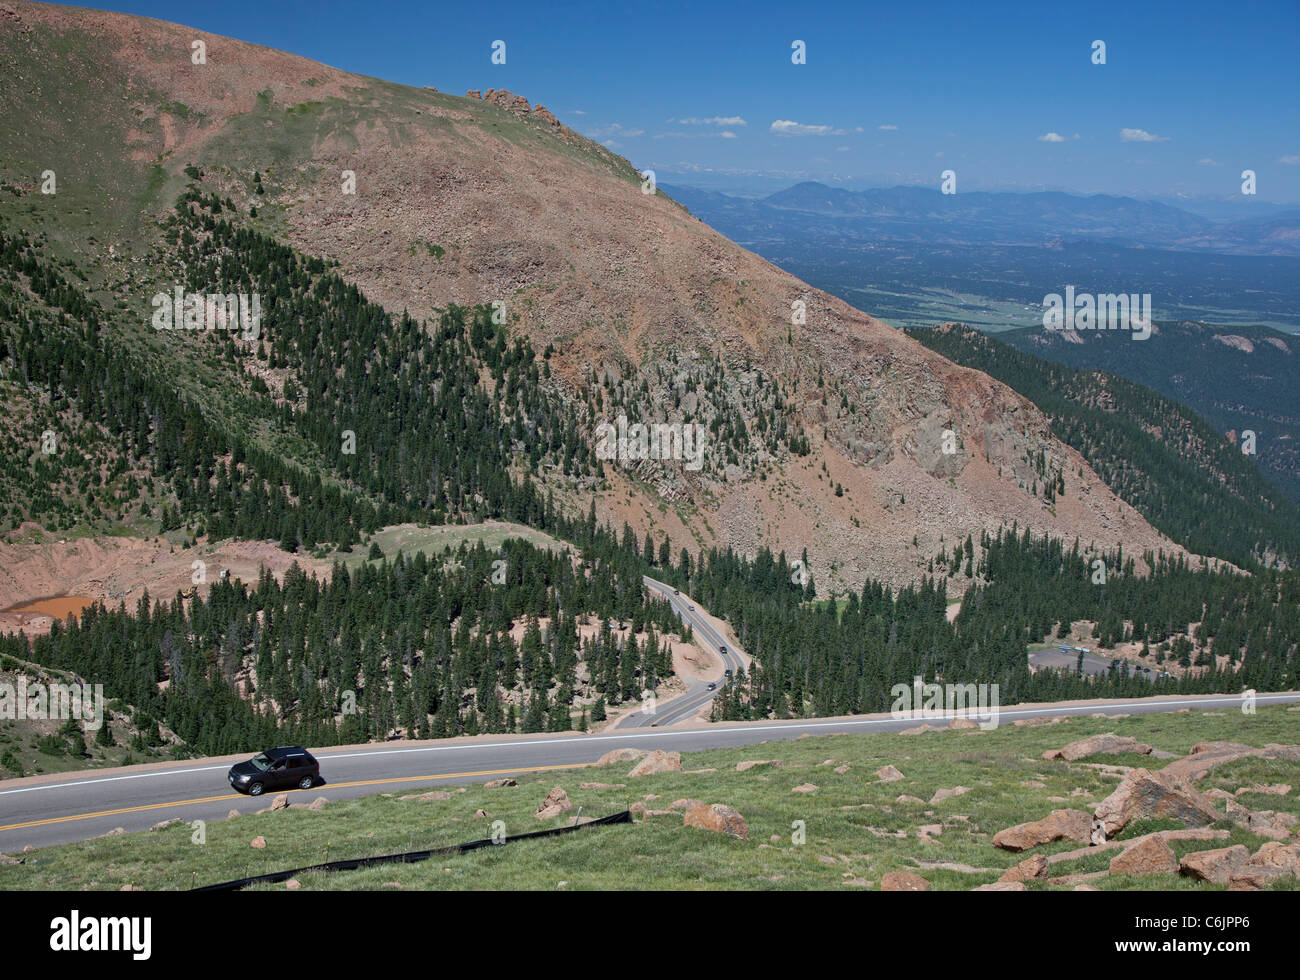 Colorado Springs, Colorado - Autos auf dem Pikes Peak Highway, eine Mautstraße, die an die Spitze des Berges 14.110 Fuß führt. Stockfoto